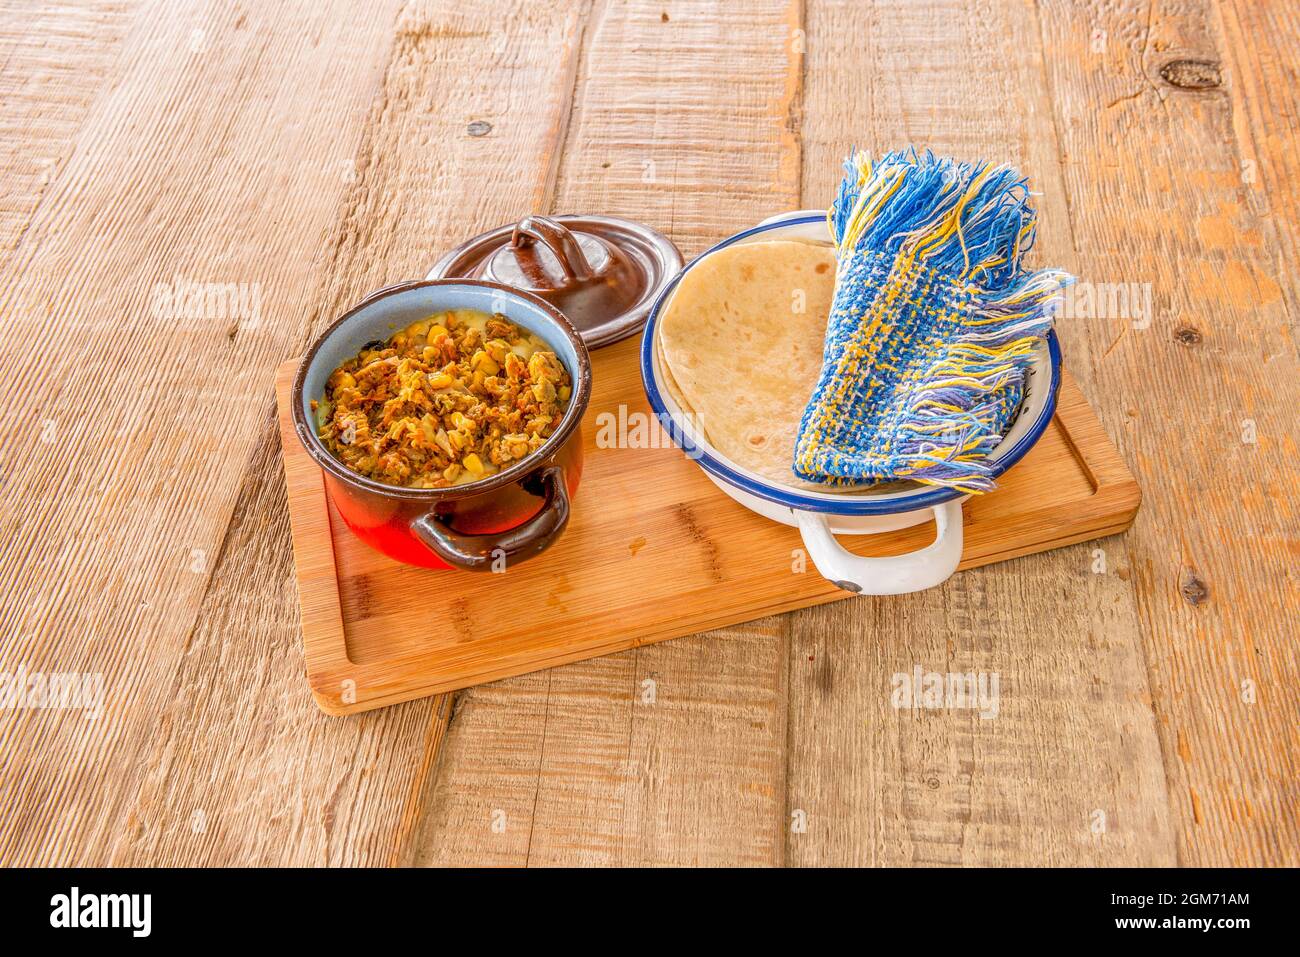 Moule à tarte en émail avec tacos mexicains au fromage de fleur et tortillas de maïs dans un bol blanc Banque D'Images